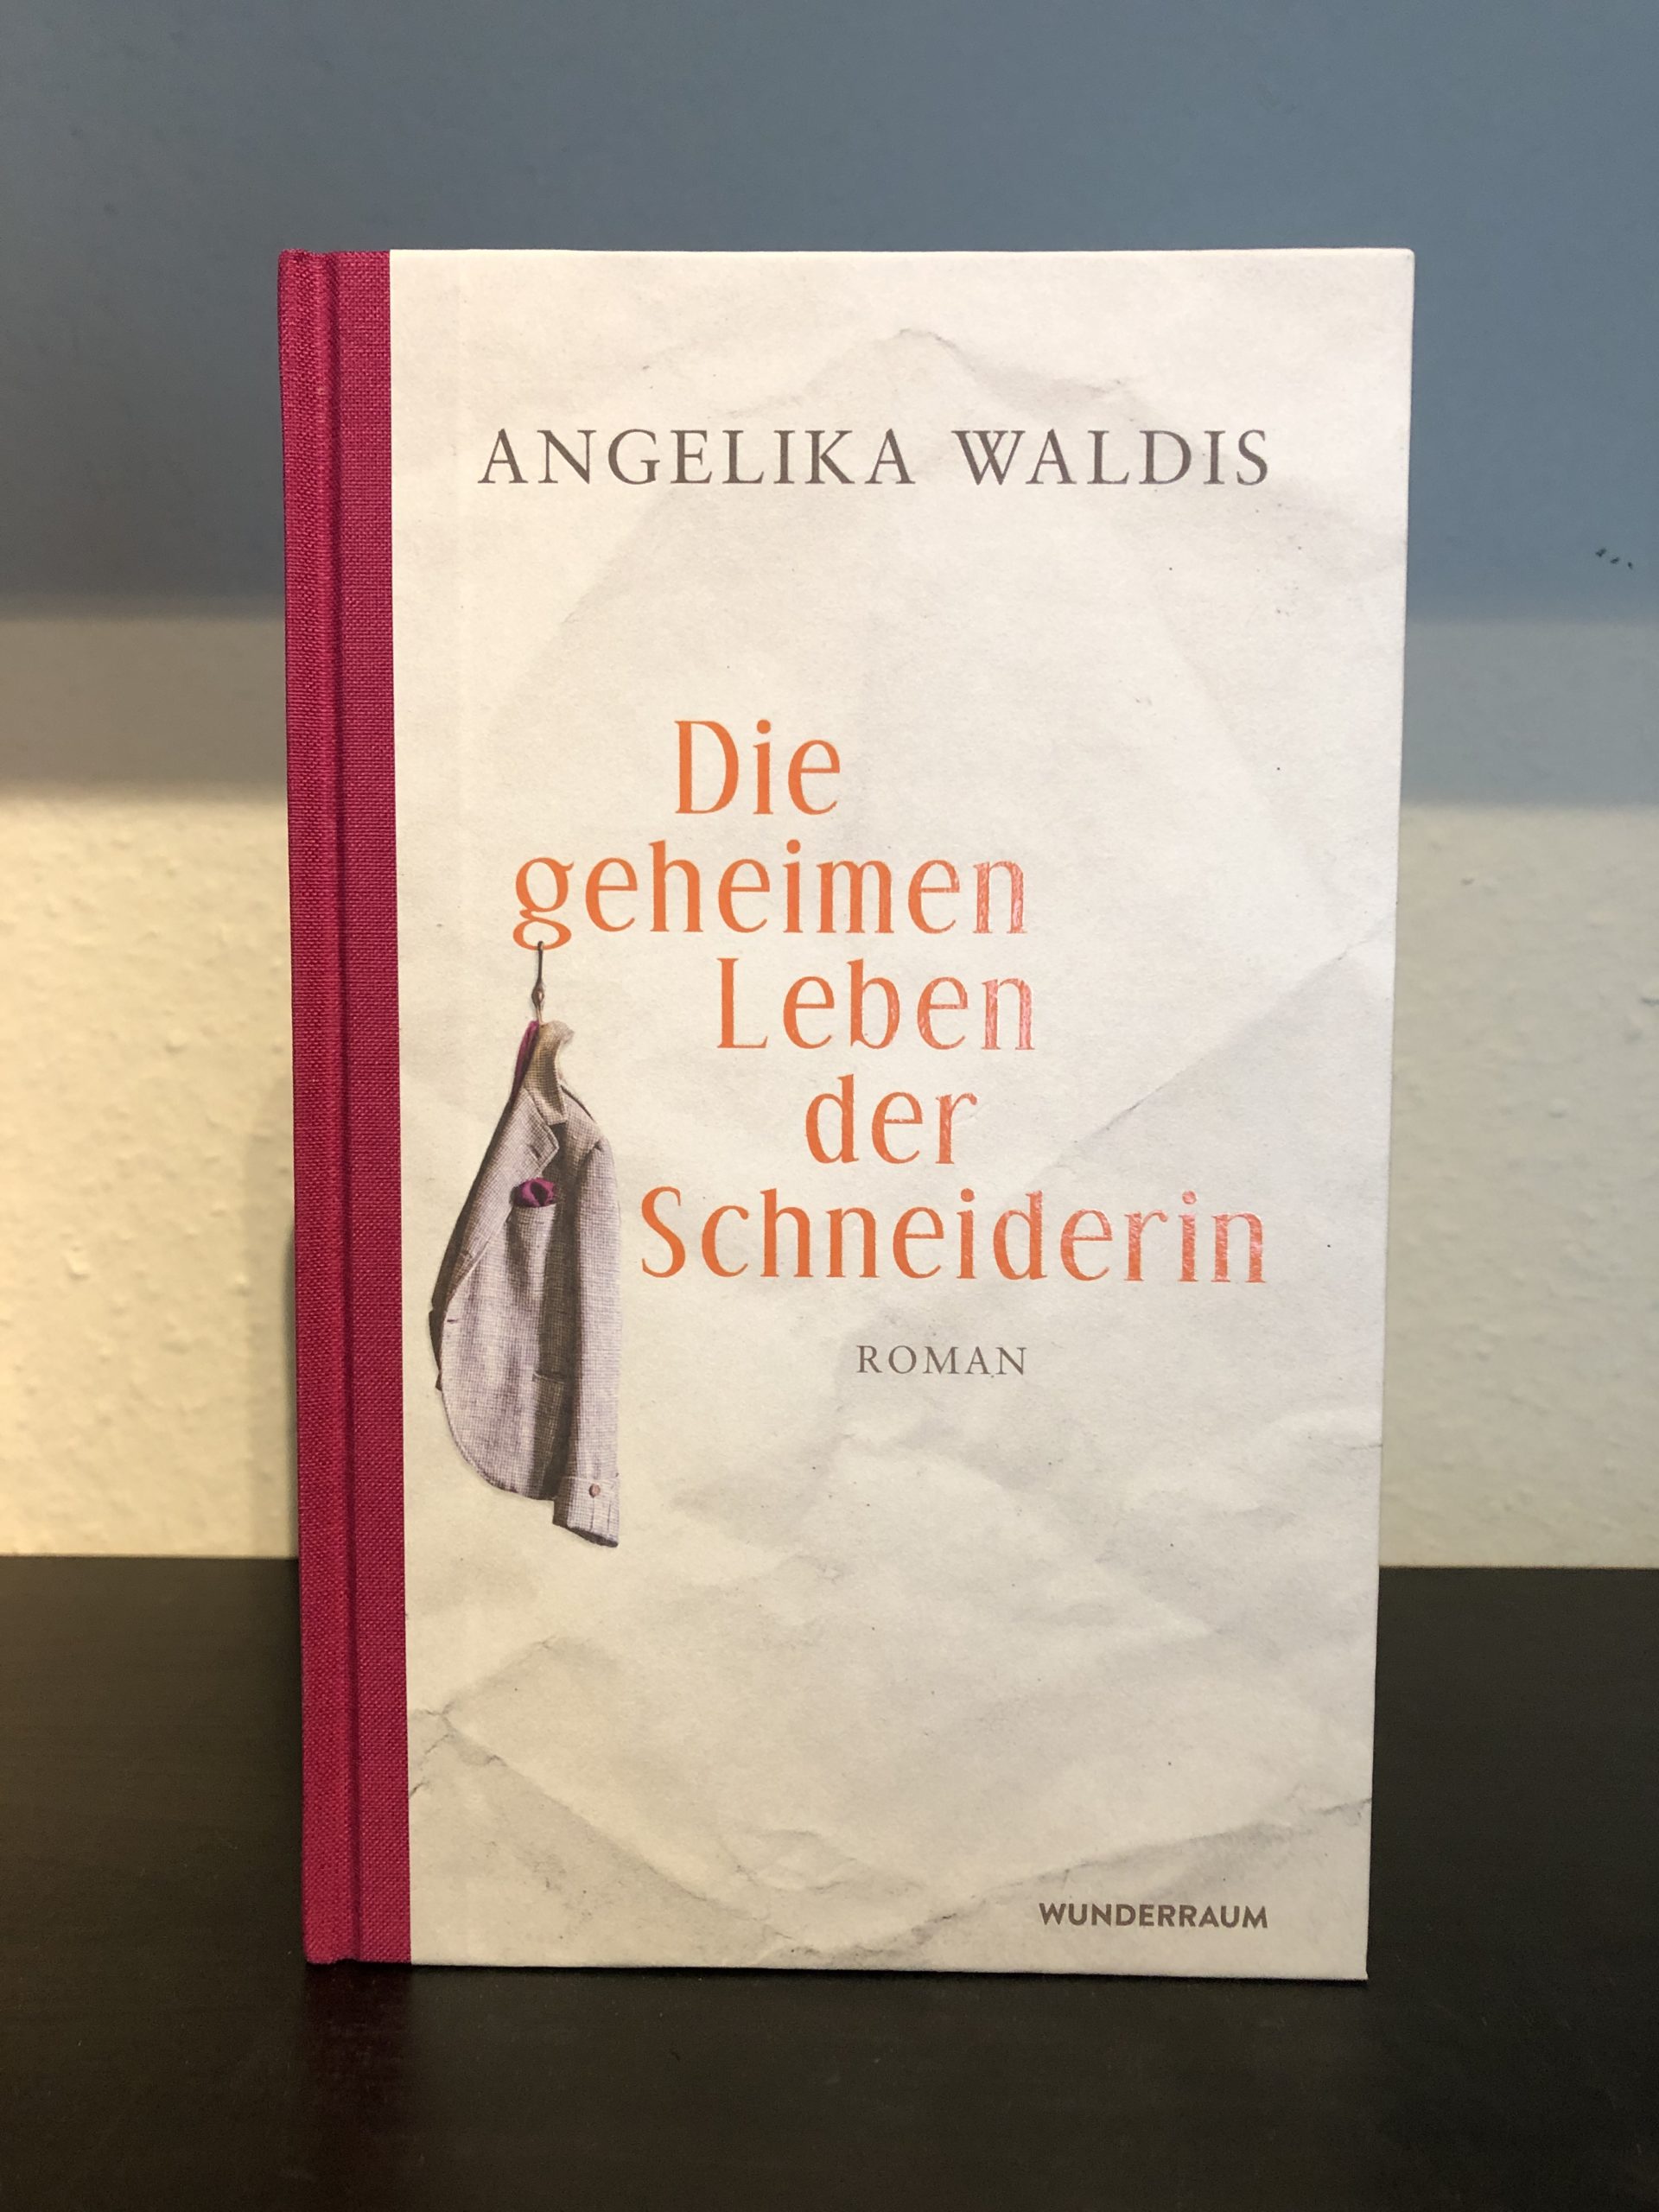 Das geheime Leben der Schneiderin - Angelika Waldis main image